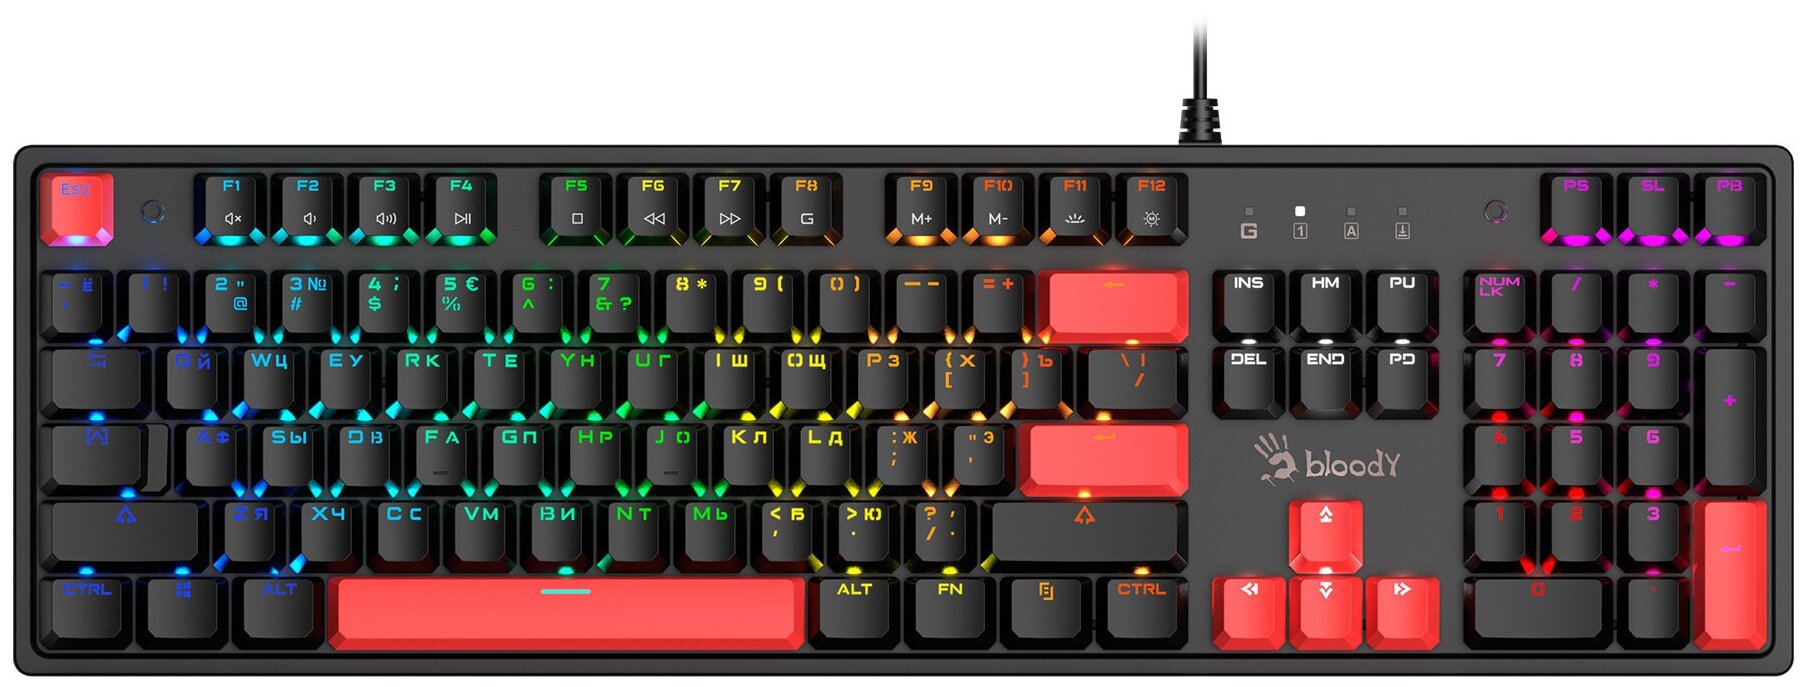 Клавиатура A4Tech Bloody S510N механическая черныйкрасный USB for gamer LED